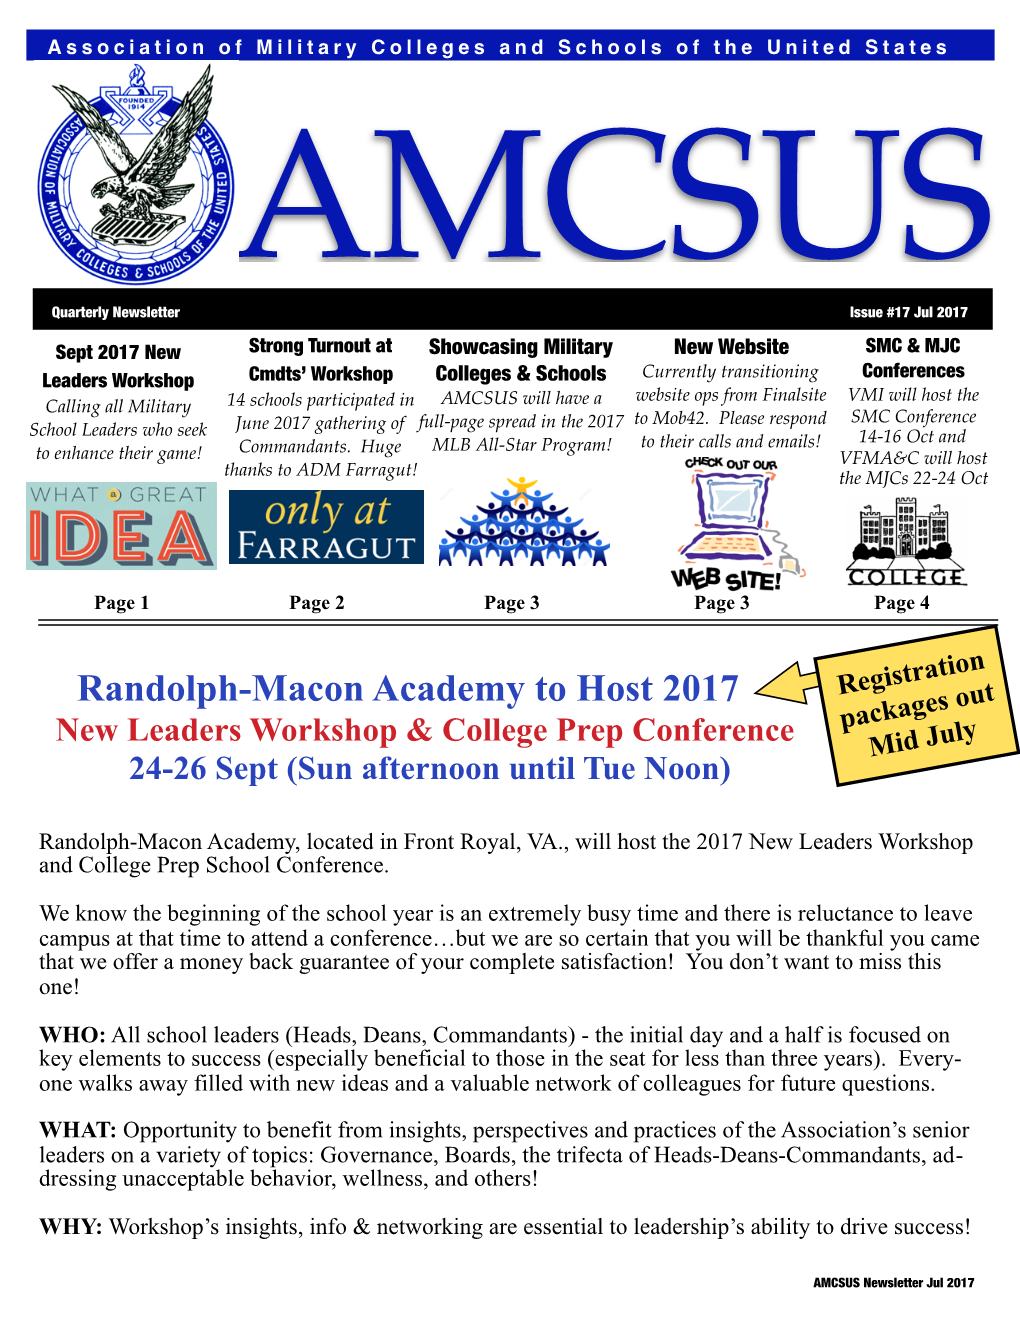 AMCSUS Issue 17